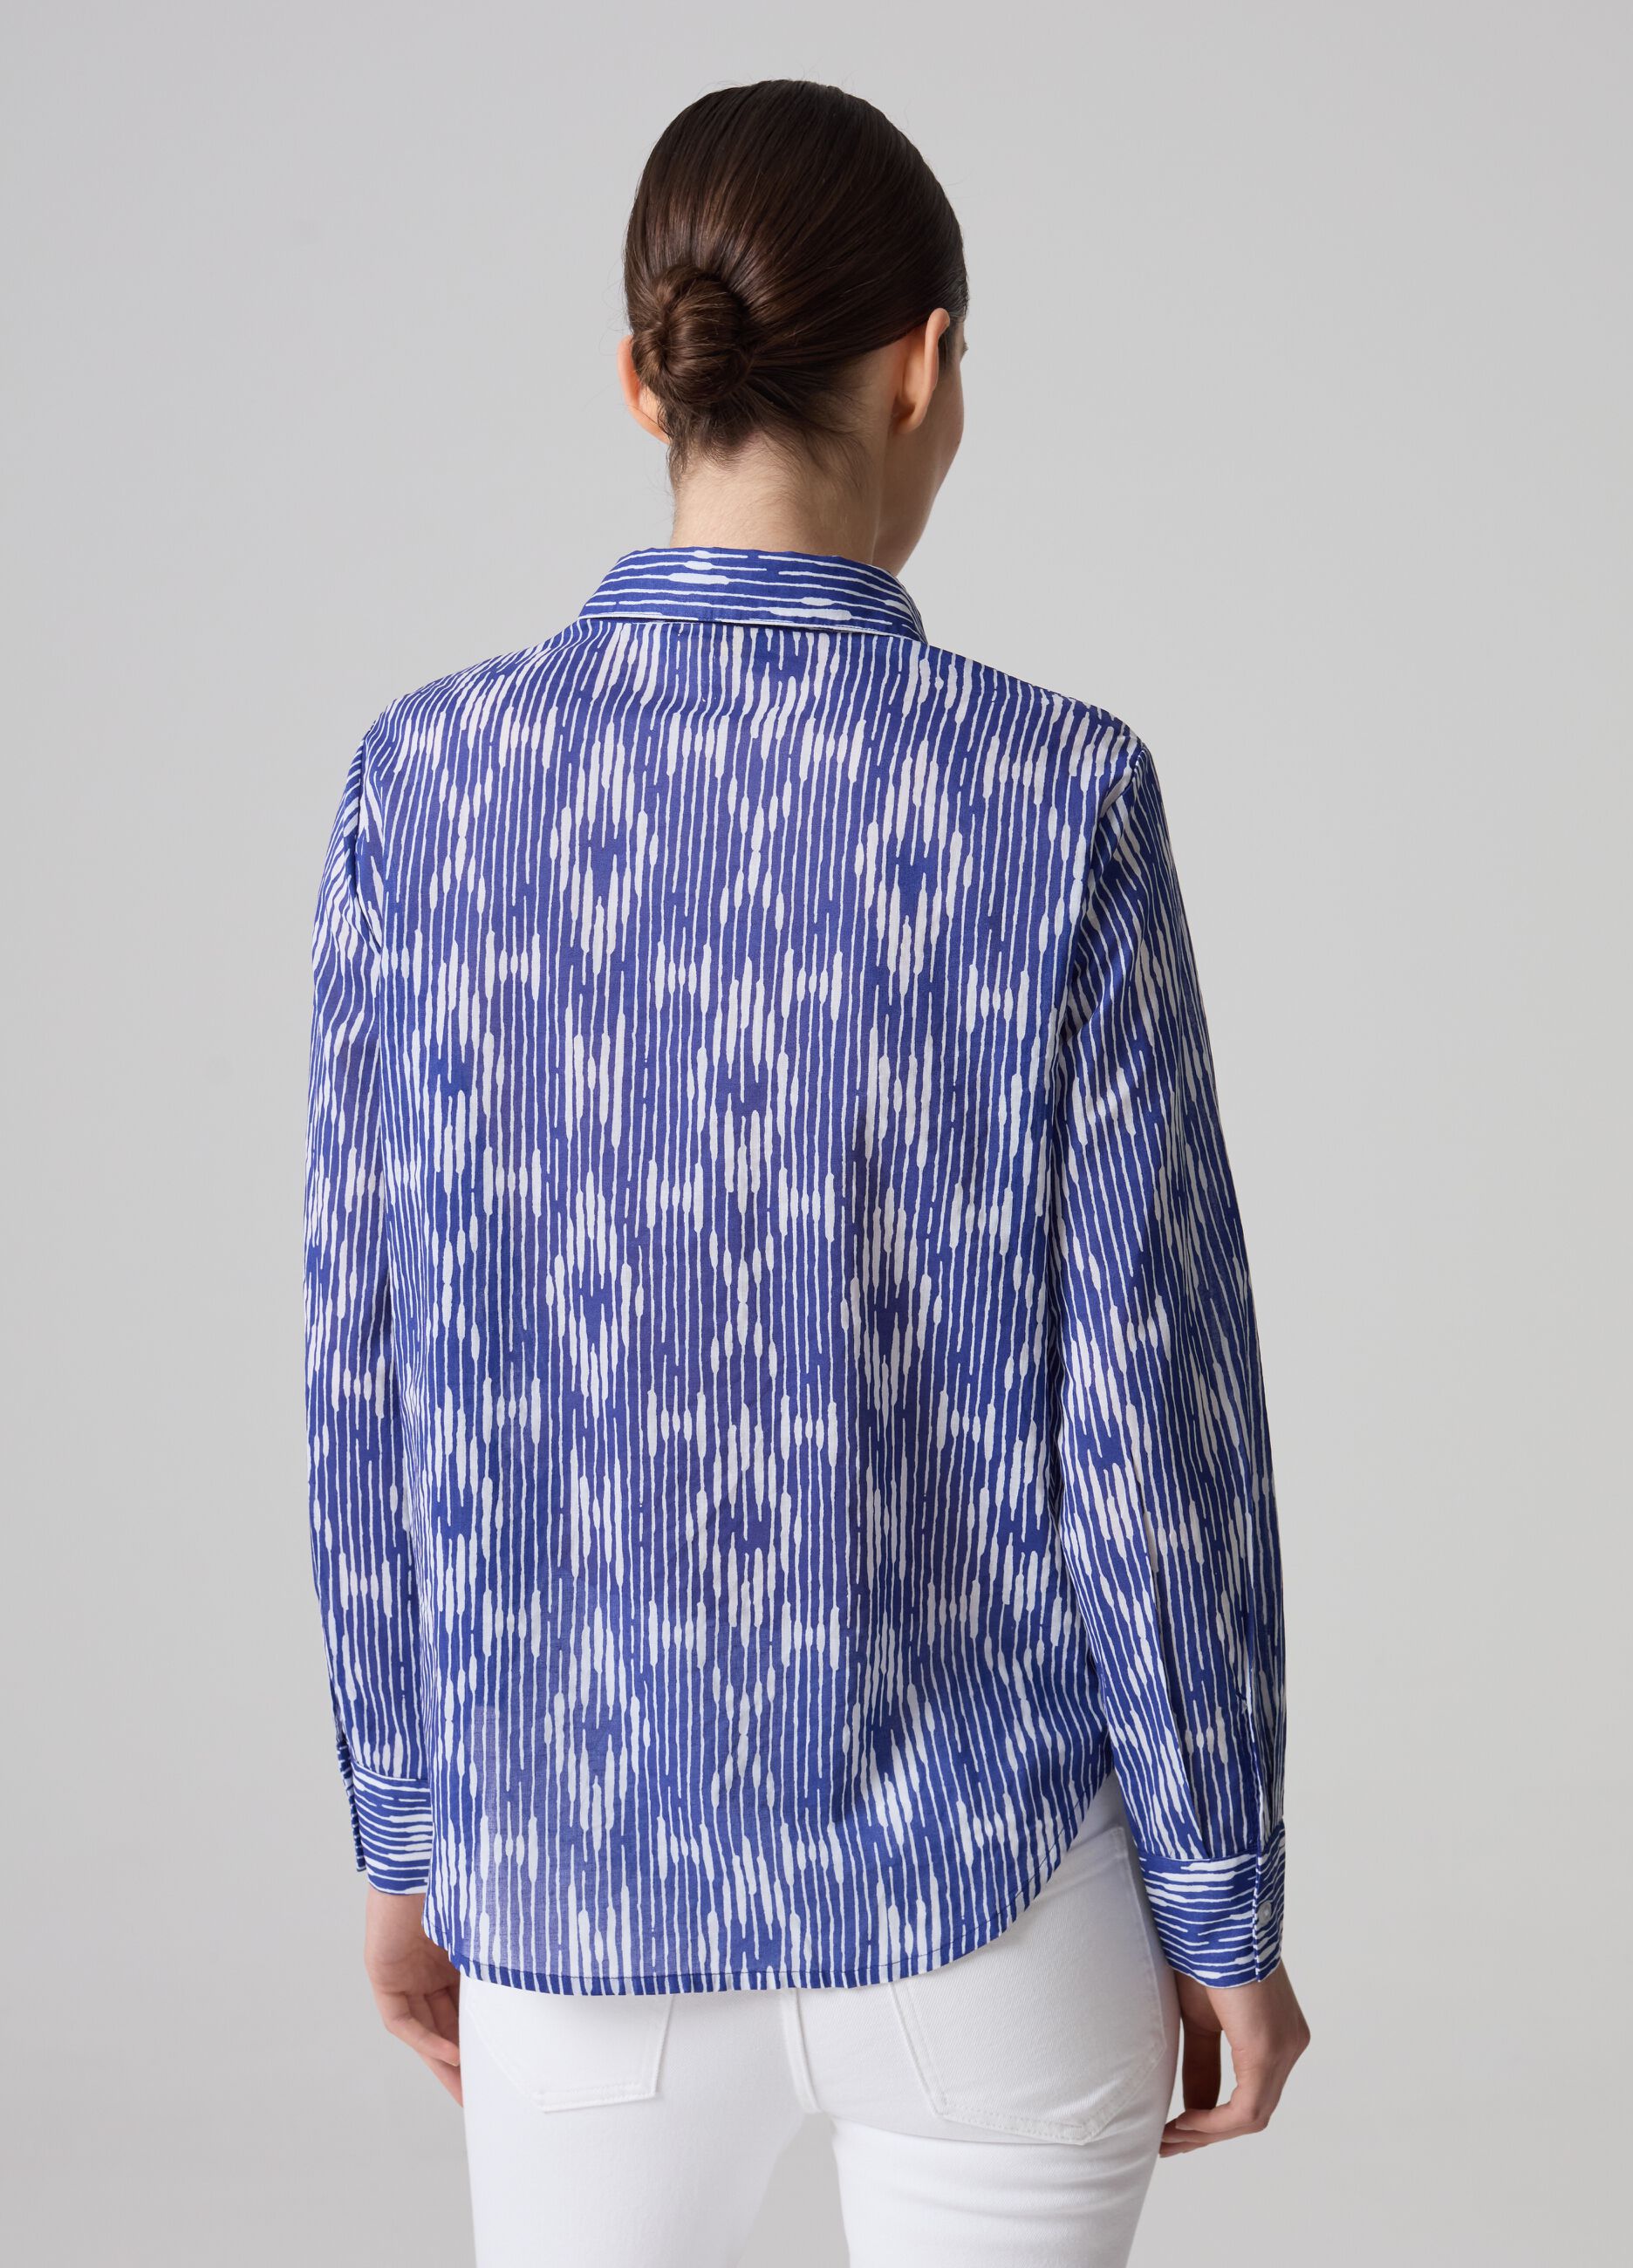 Cotton shirt with ikat print